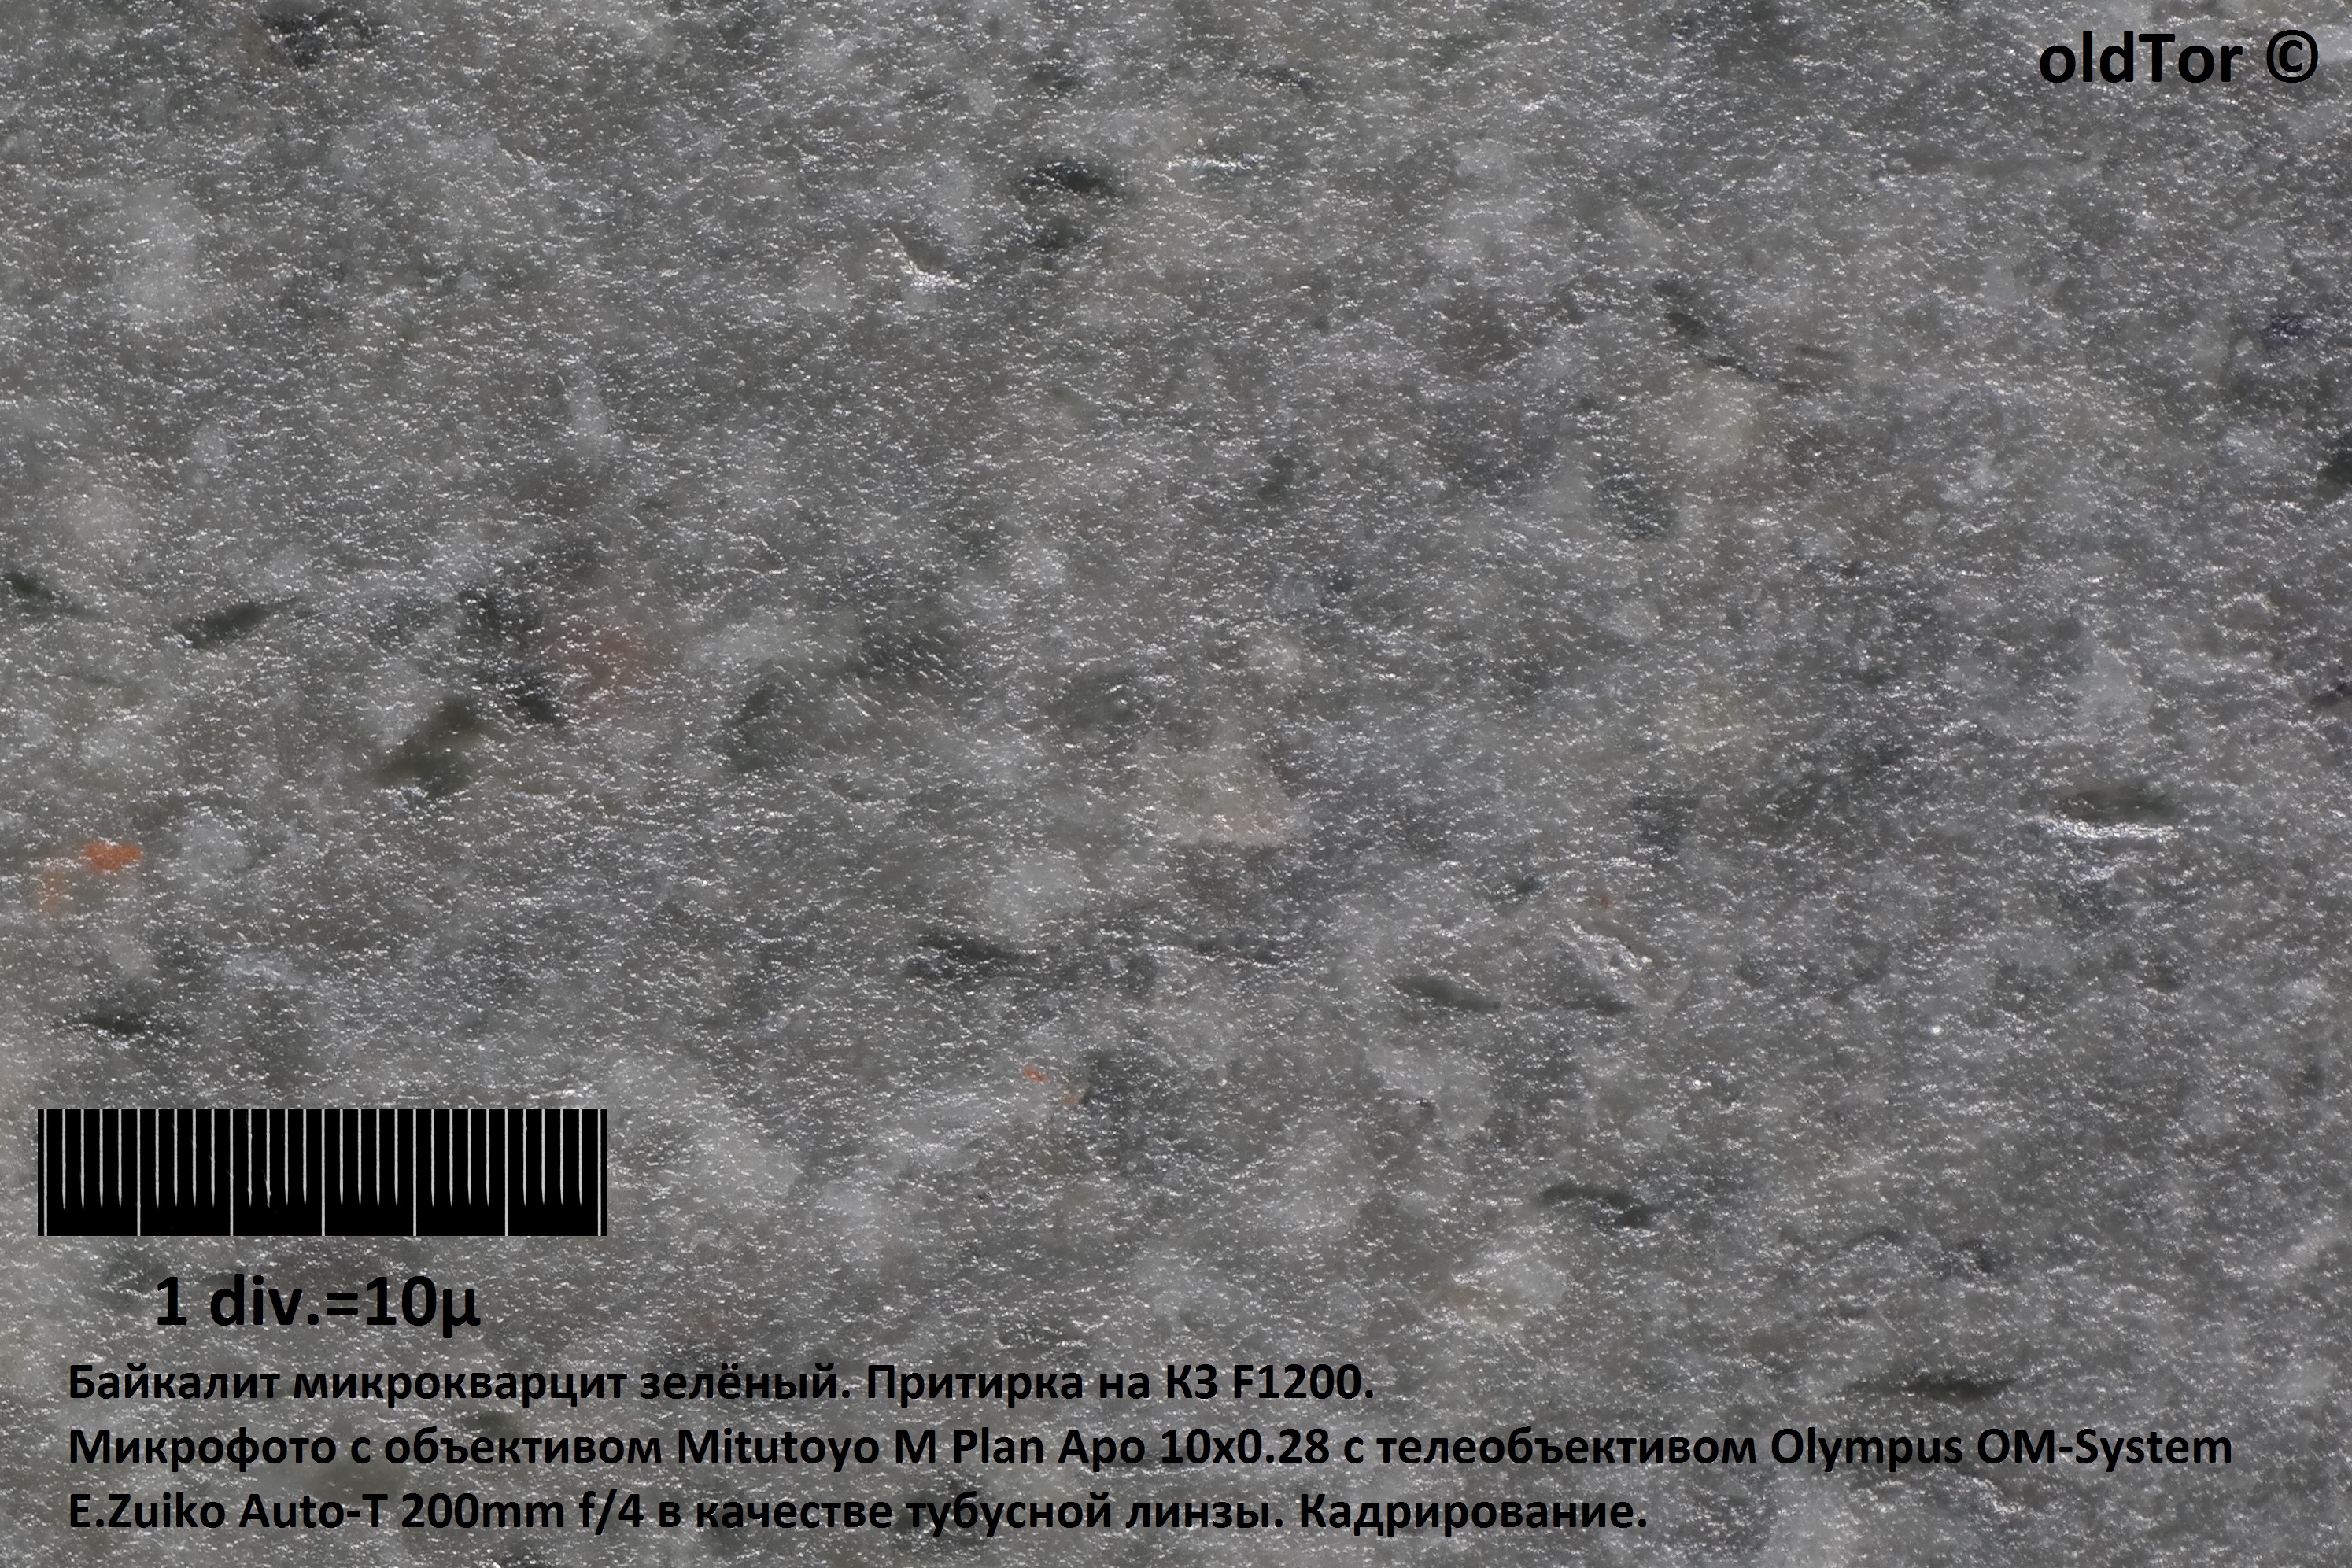 Байкалит микрофото 2. oldTor